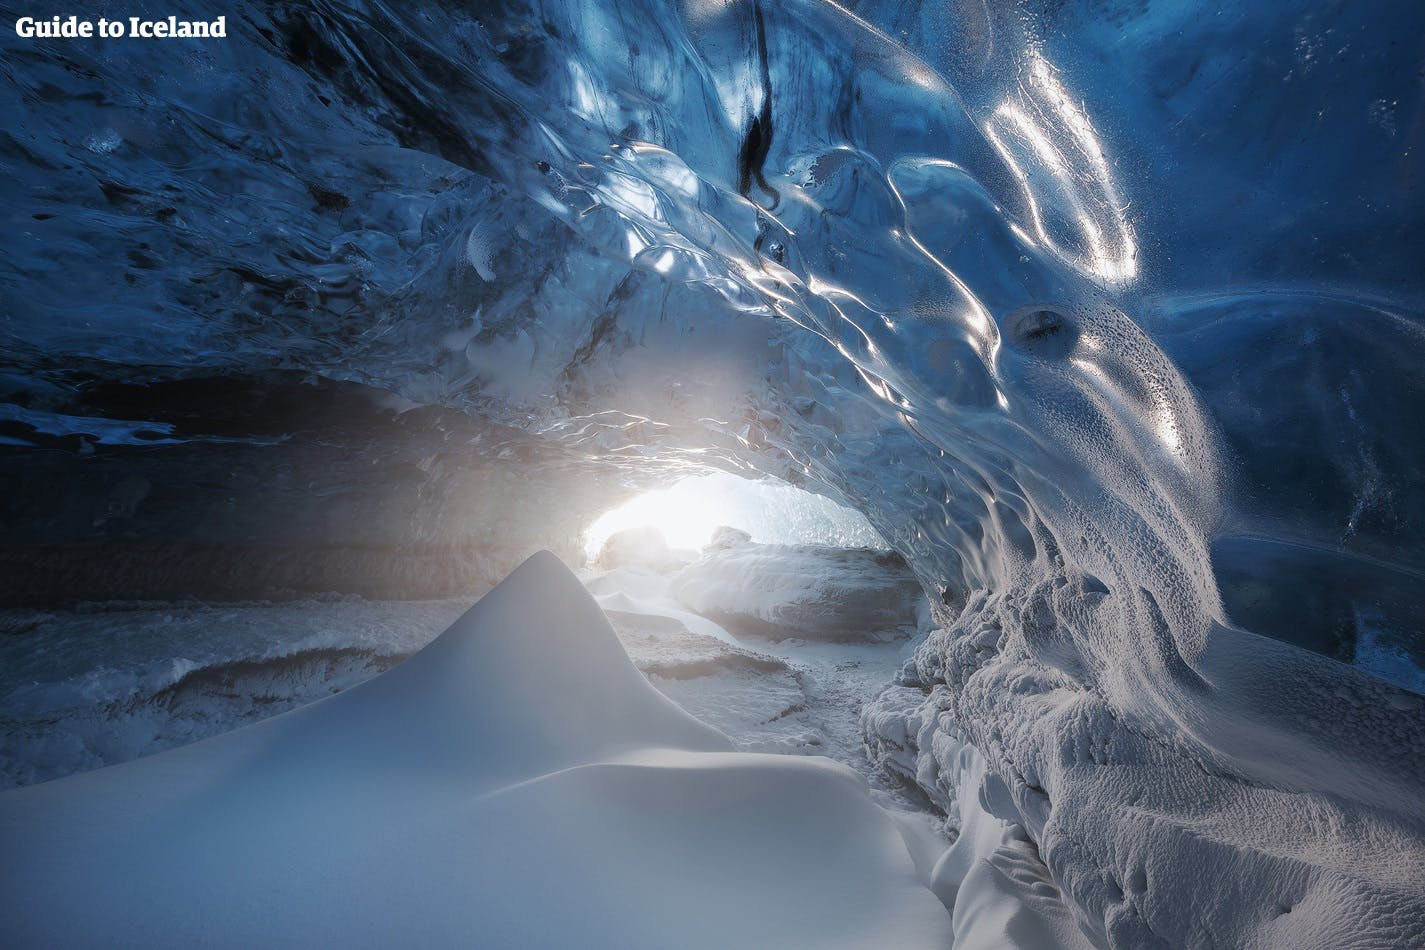 Jaskinie lodowe, które w normalnych warunkach otwierają się pod lodowcem Vatnajökull od listopada do marca, przyciągają kolorami, fakturą i formacjami lodowymi.